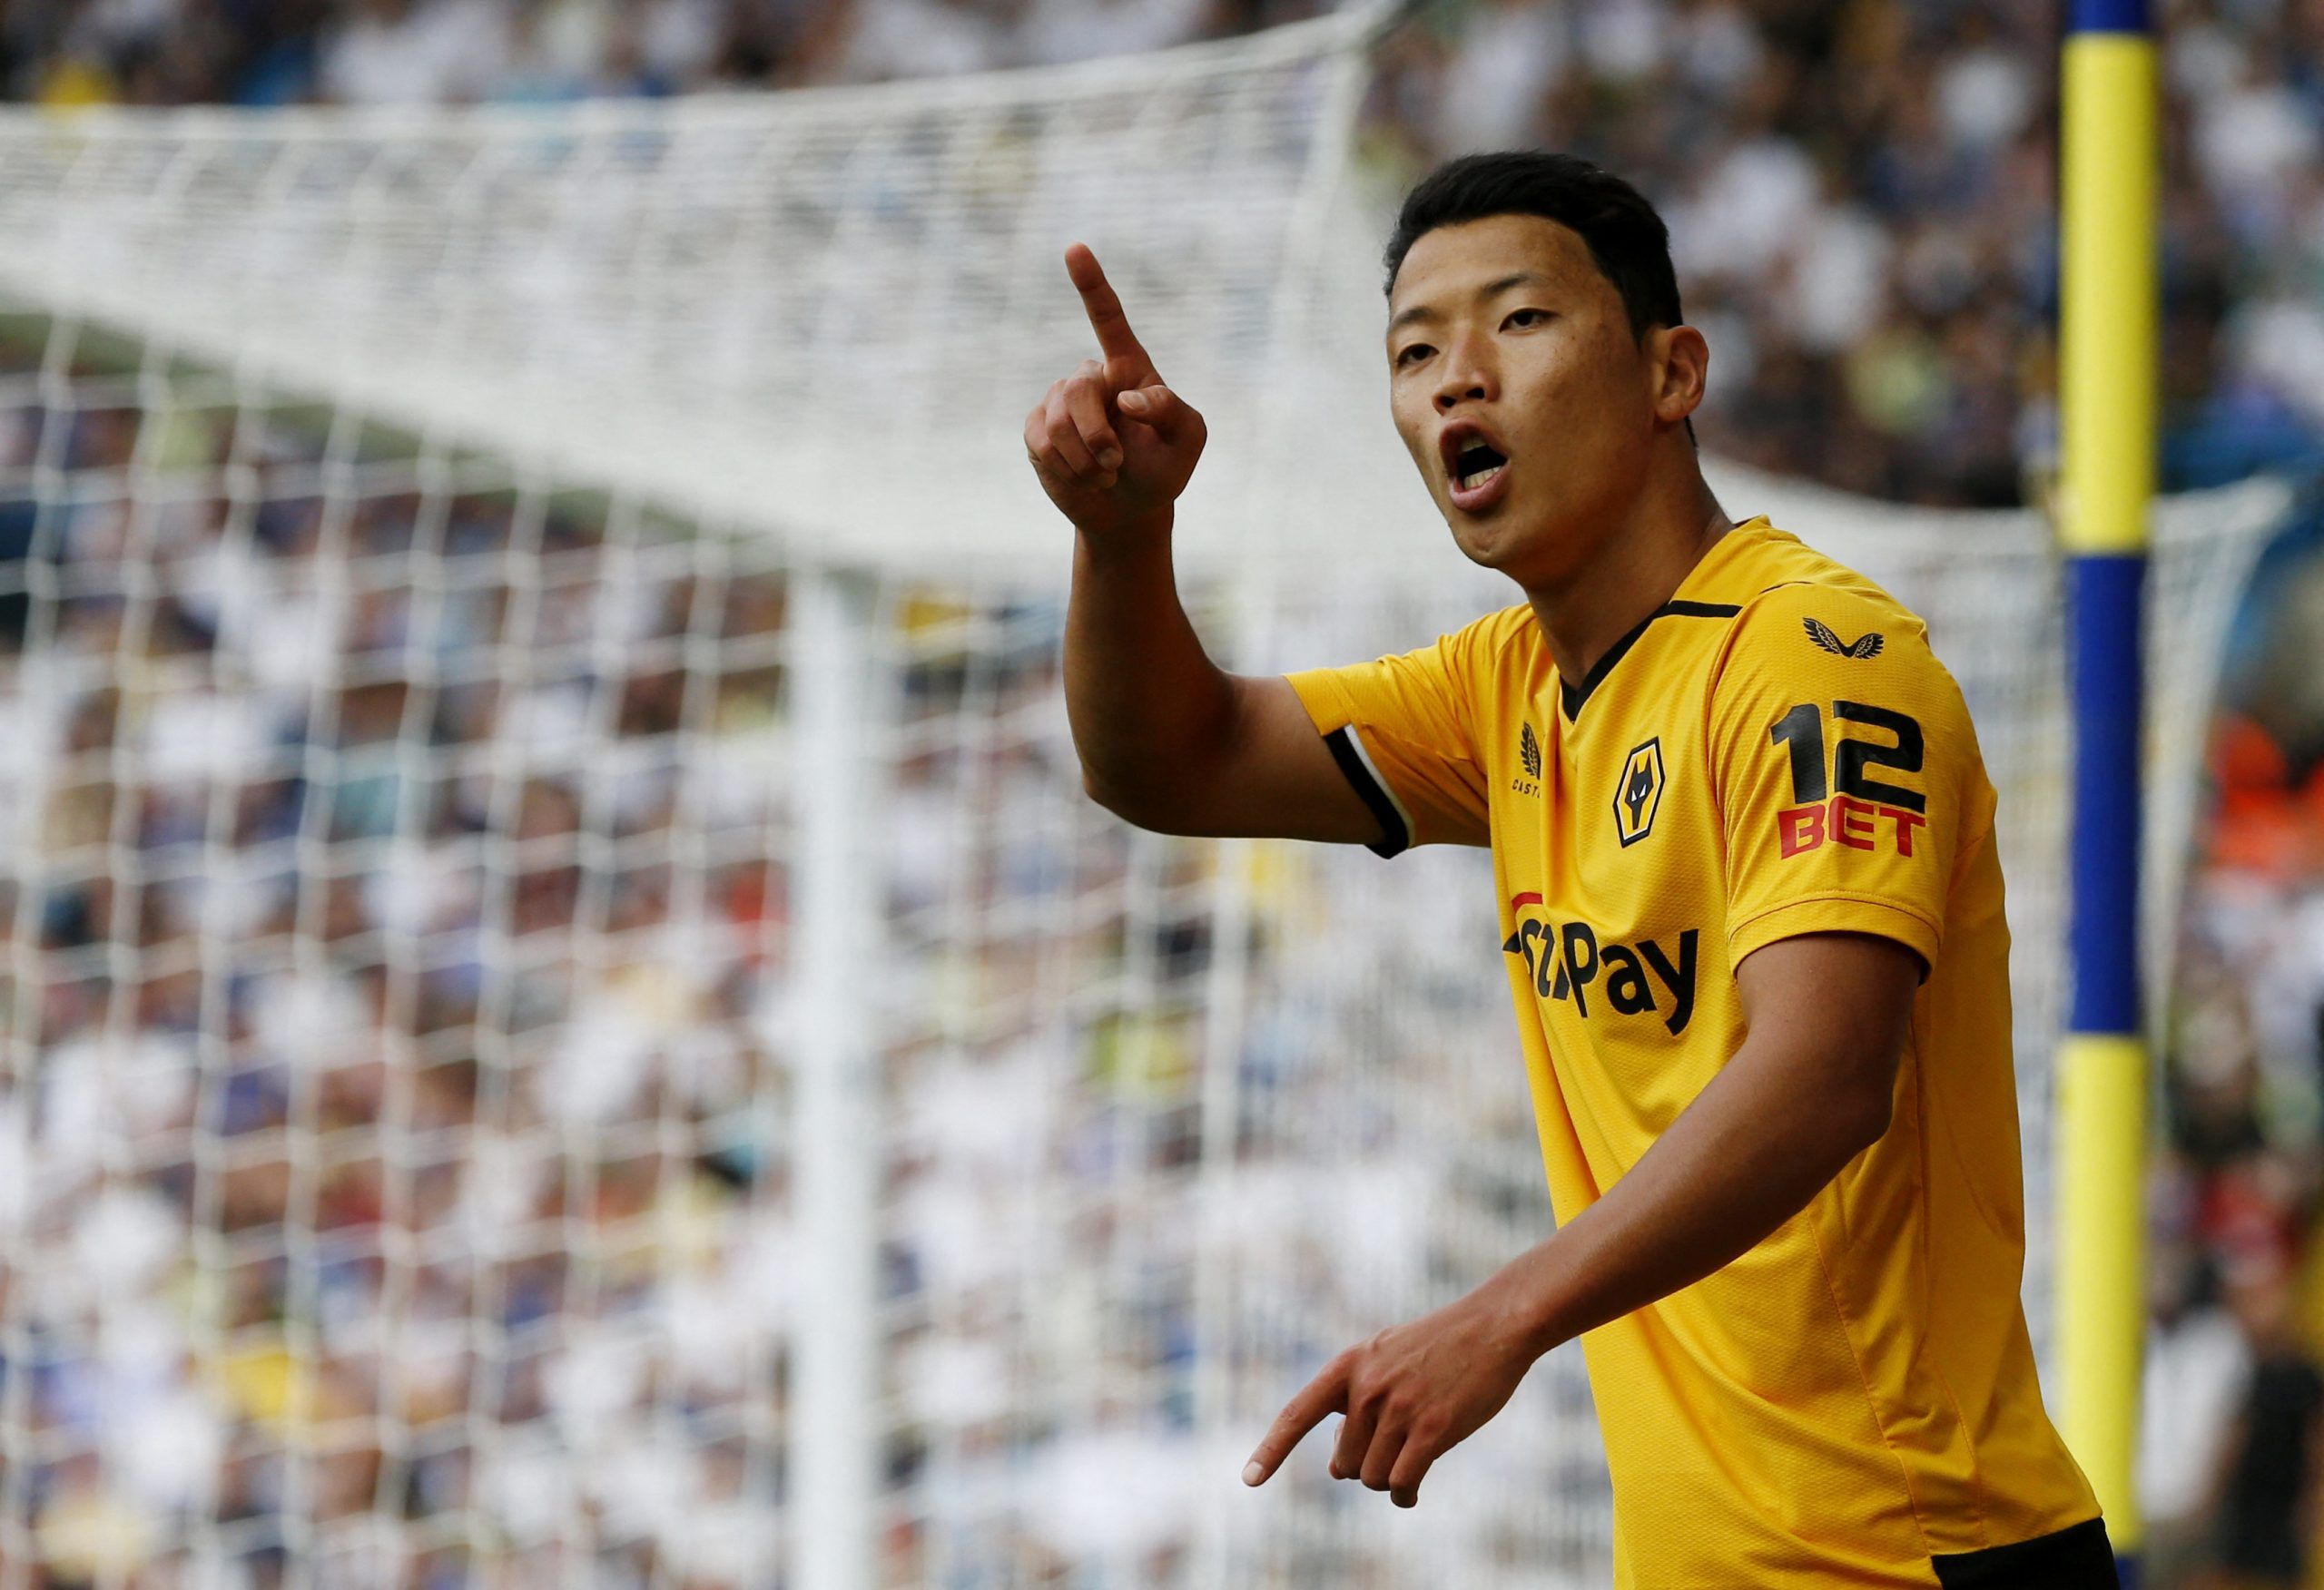 Leeds: Wolves journalist confirms Hwang Hee-chan interest -Leeds United News